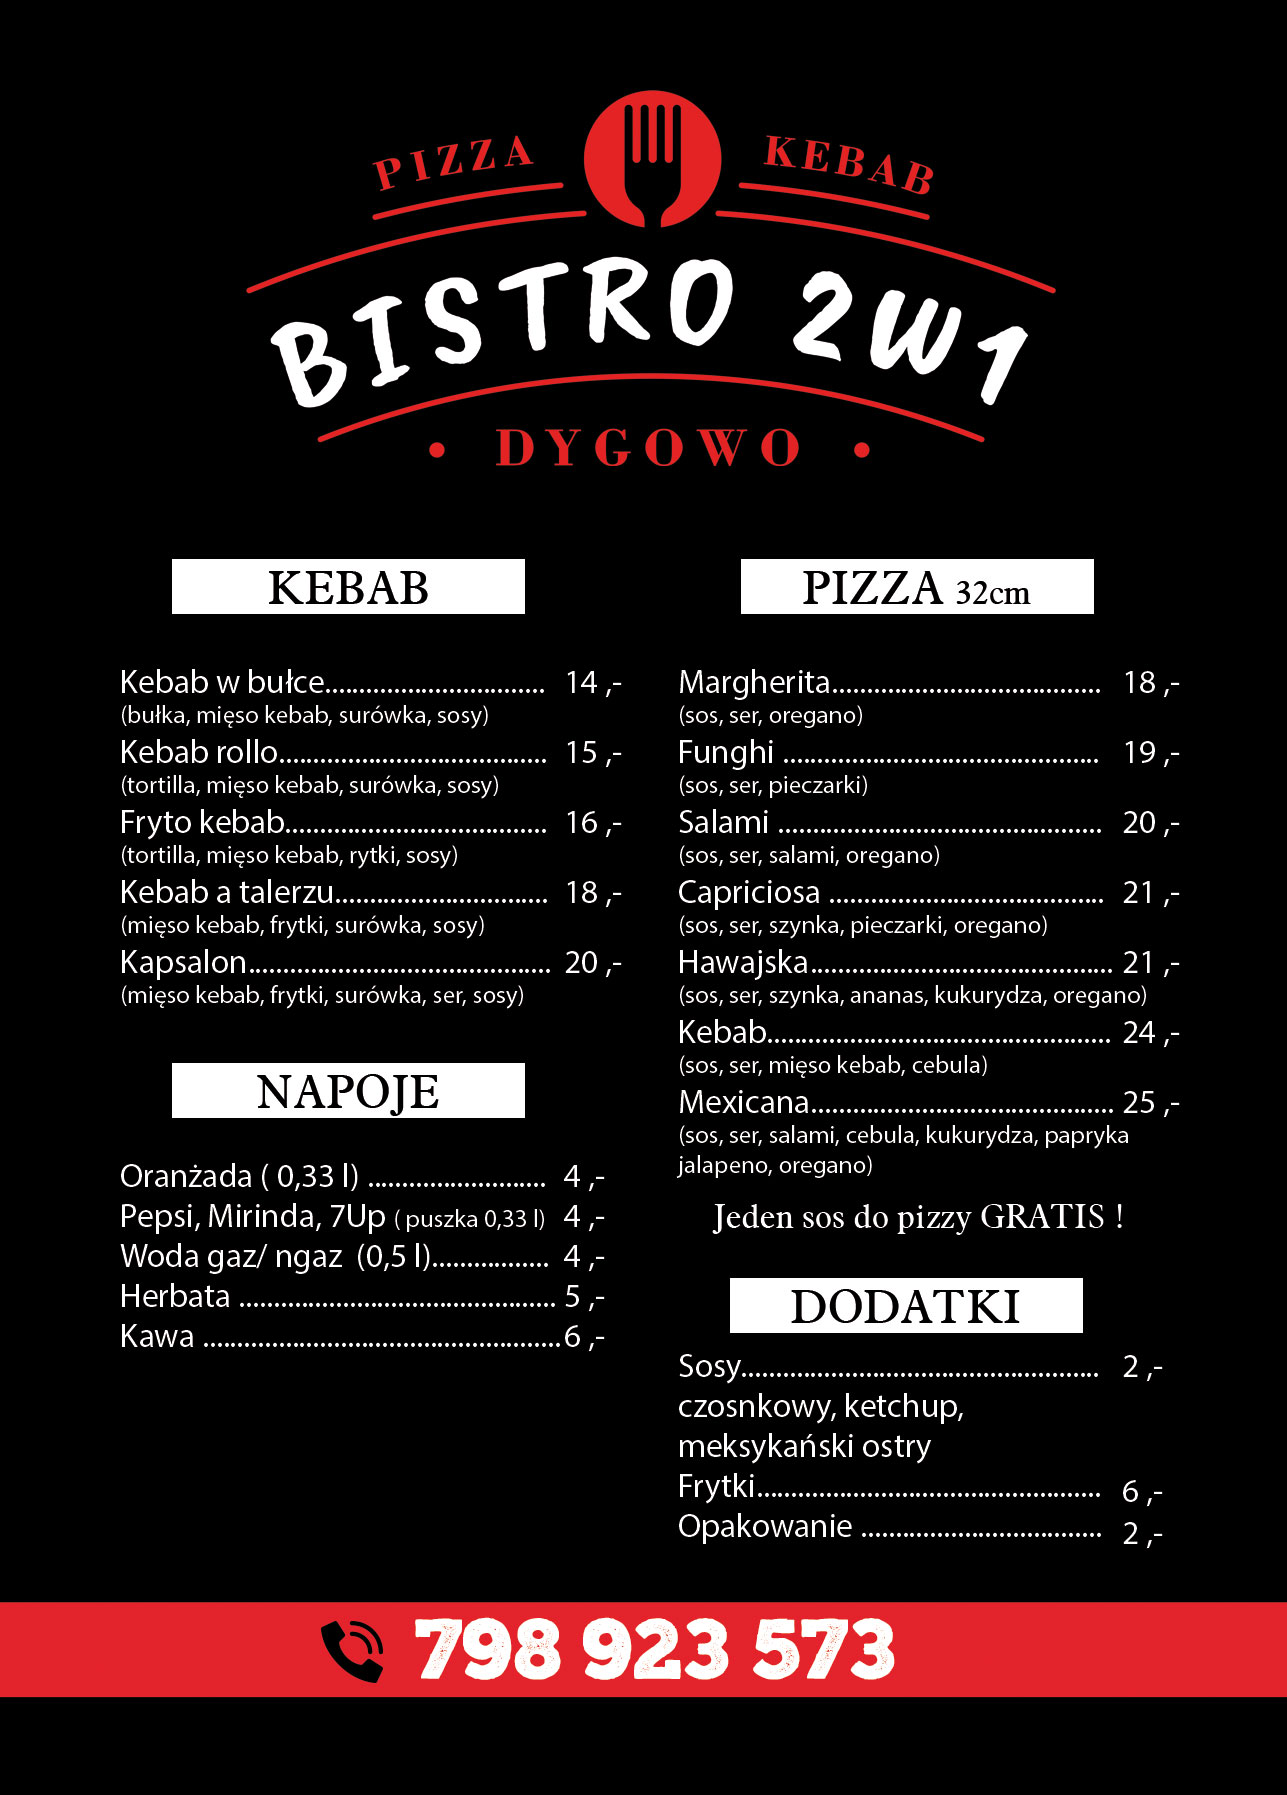 bistro-2-w-1-dygowo-pizza-kebab-